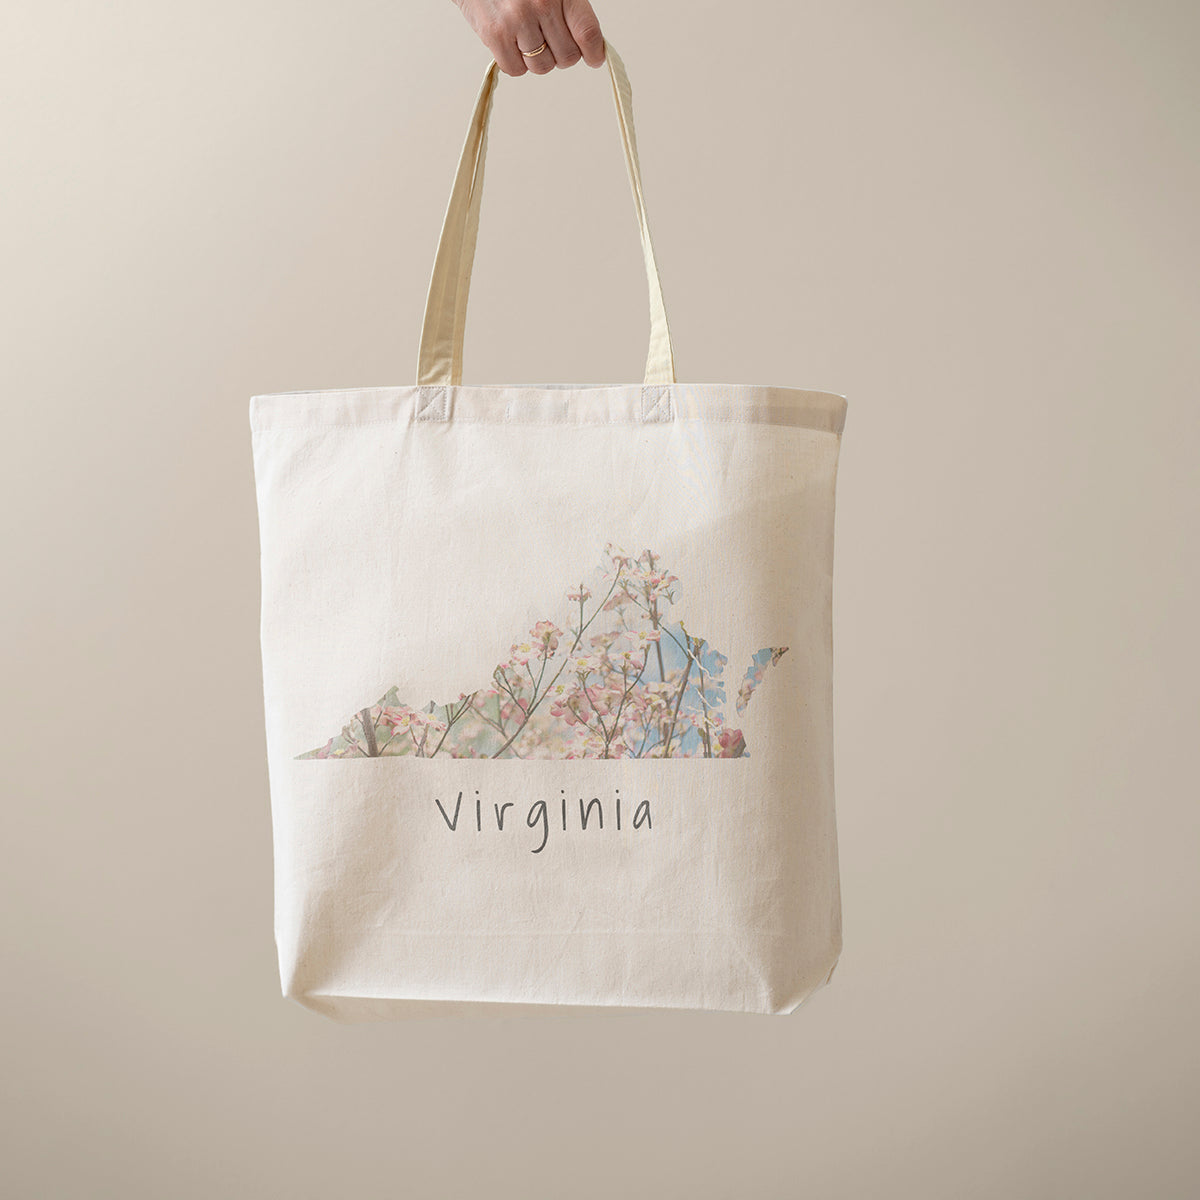 Virginia Tote Bag